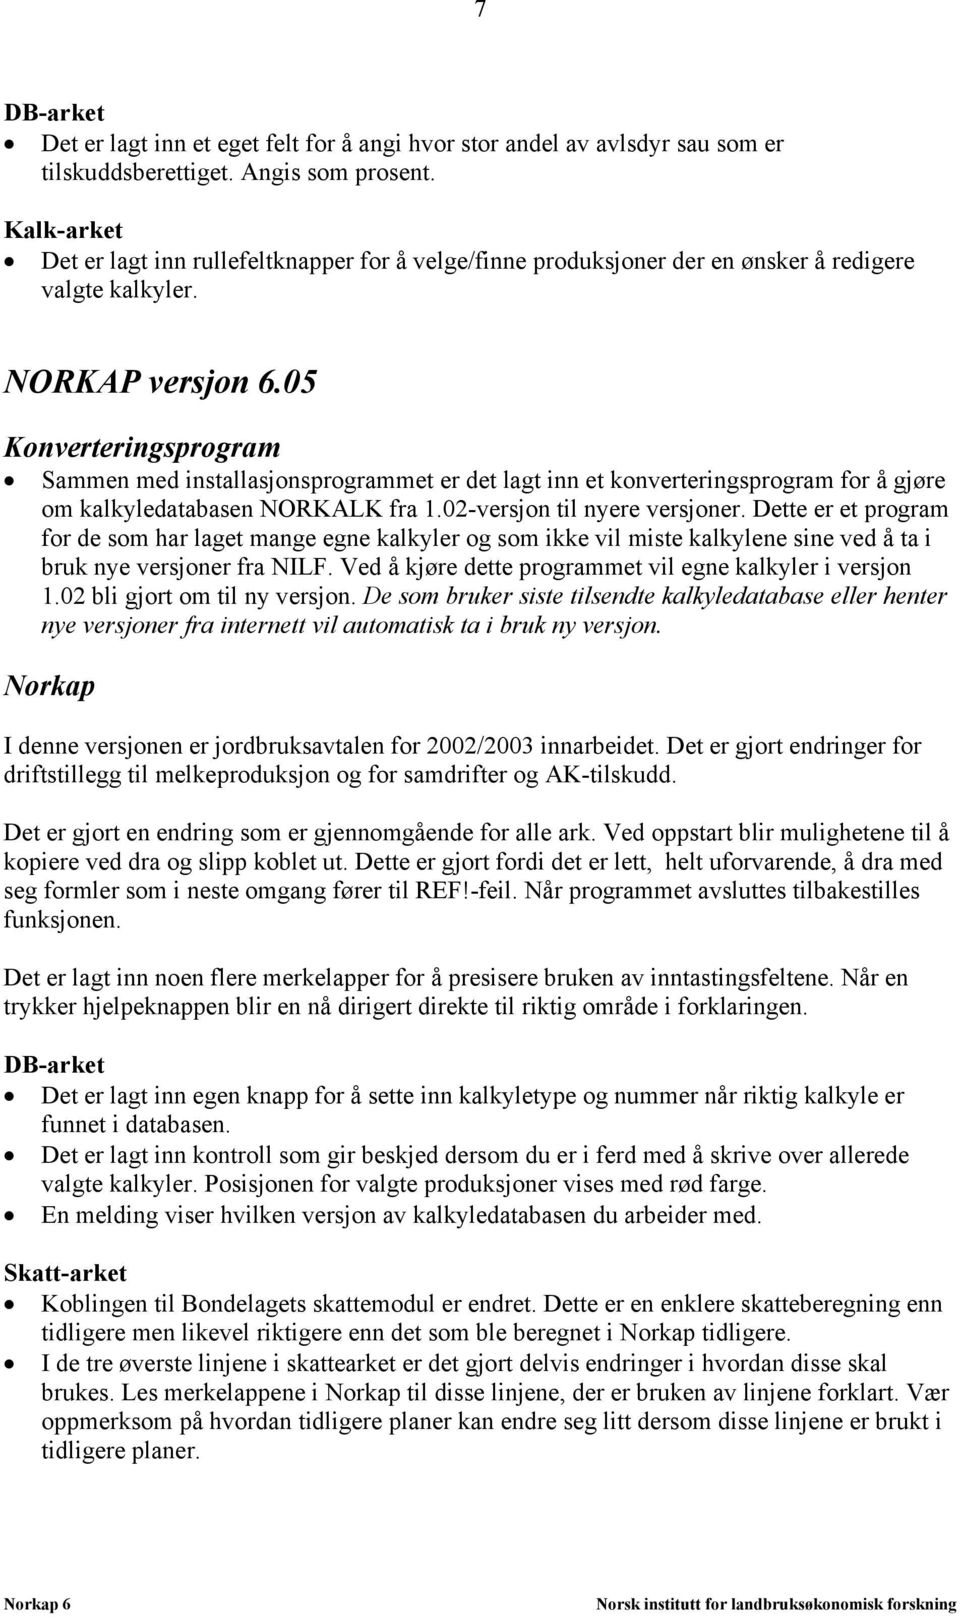 05 Konverteringsprogram Sammen med installasjonsprogrammet er det lagt inn et konverteringsprogram for å gjøre om kalkyledatabasen NORKALK fra 1.02-versjon til nyere versjoner.